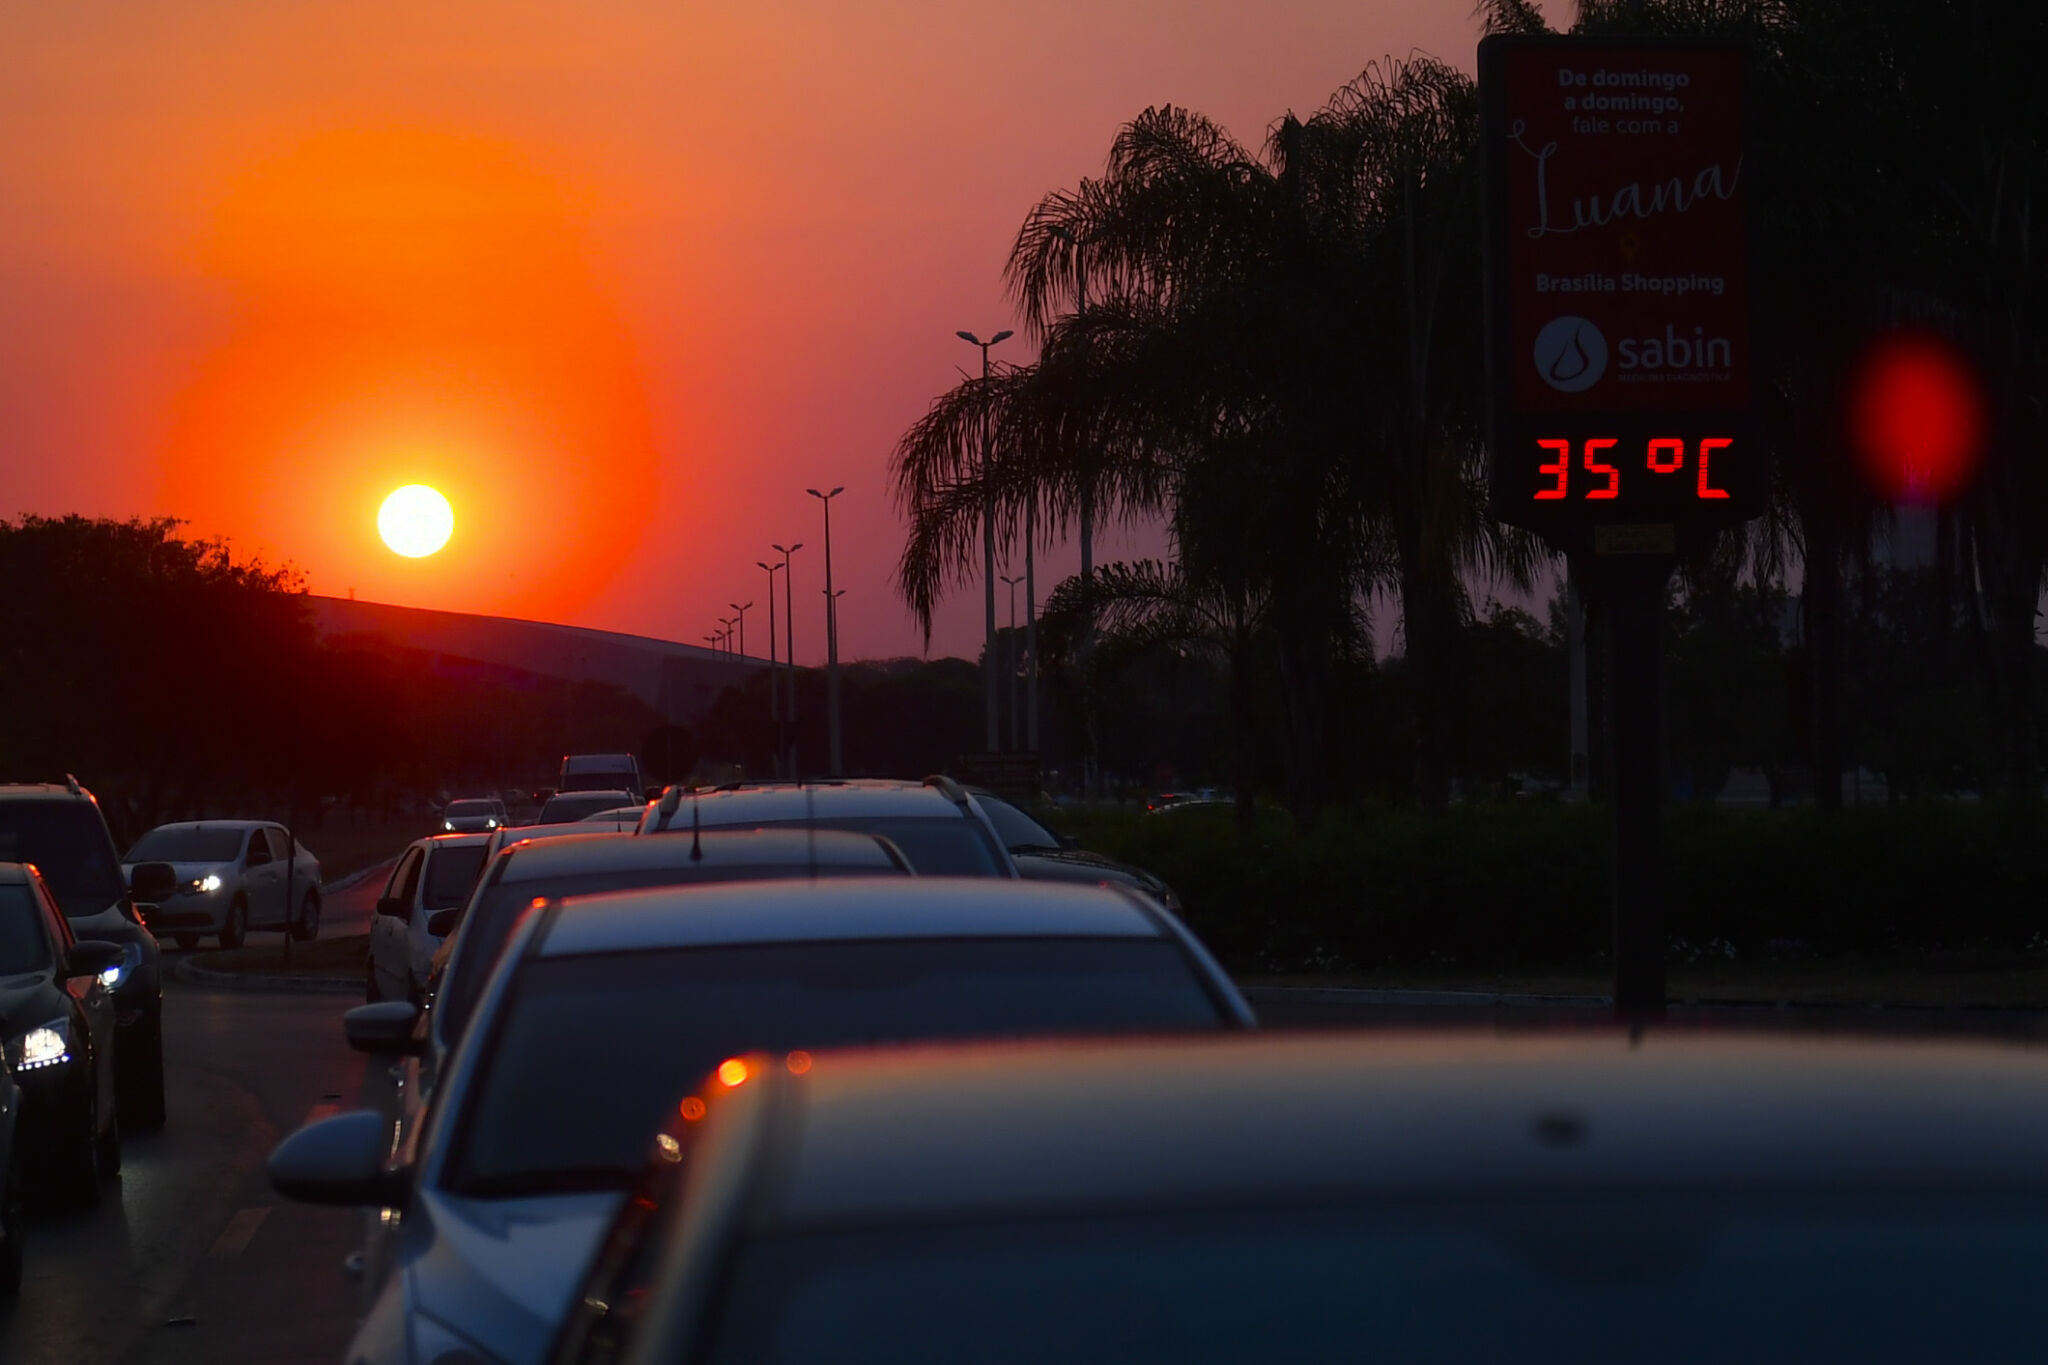 Trânsito de carros sob o sol, com um termômetro marcando 35 graus; para matéria sobre cuidados com o ar-condicionado.